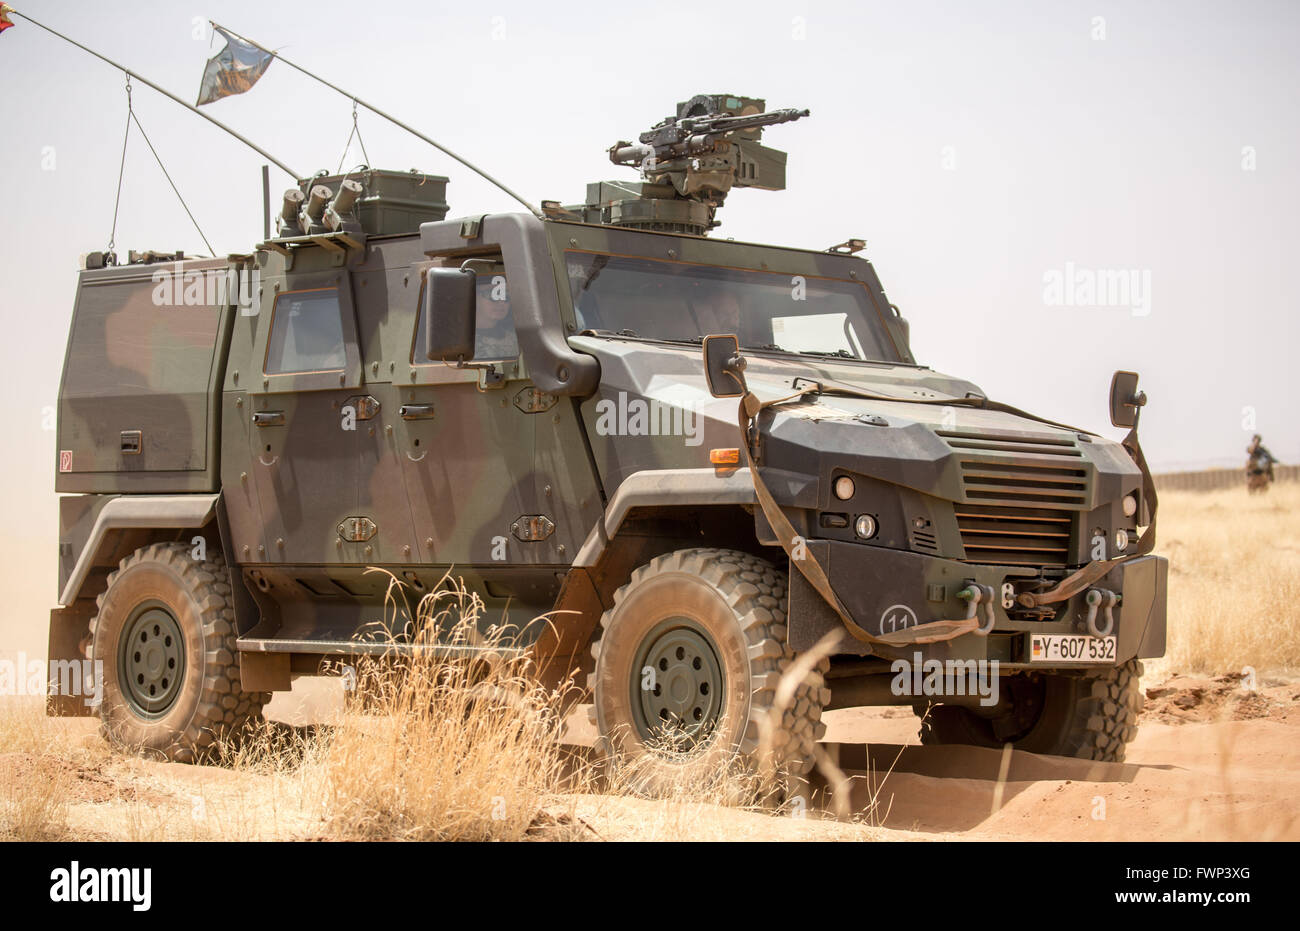 Ein gepanzertes Fahrzeug in Eagle IV im Bild während eines Bohrers am Camp Castor in Gao, Mali, 5. April 2016. Mitglieder der deutschen bewaffneten Kräfte (Bundeswehr) wurden in der Region im Rahmen der UN-Mission MINUSMA bereitgestellt. Foto: MICHAEL KAPPELER/dpa Stockfoto